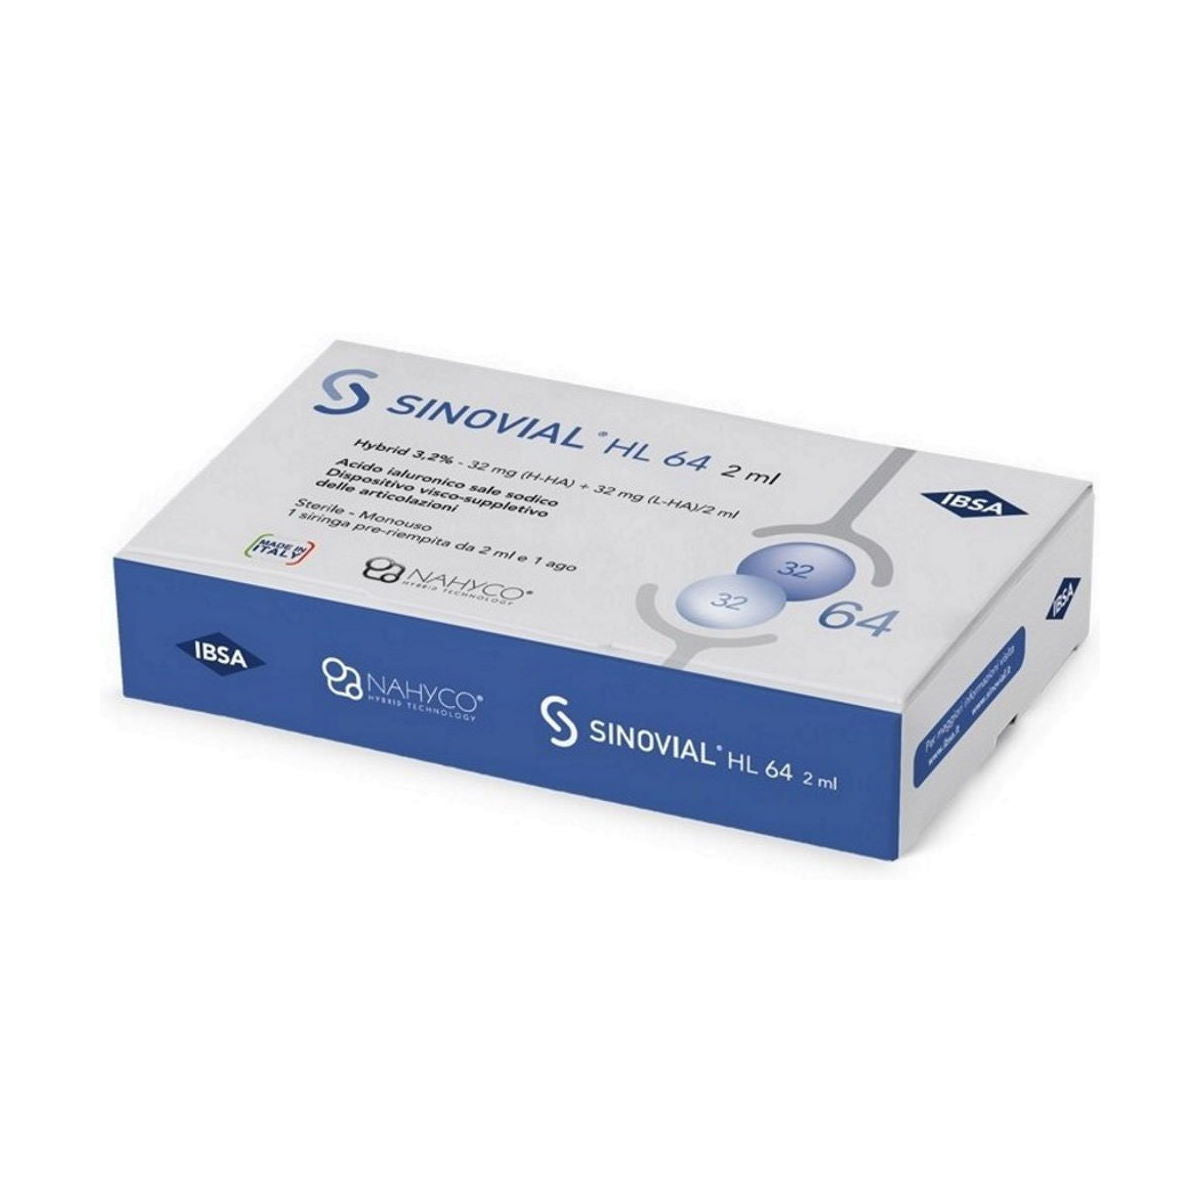 Sinovial HL 64
Contiene 1 siringa da 2ml
Indicato per agire come sostituto del liquido sinoviale nei trattamenti intra-articolari e per questo molto utile in caso di osteoartrosi.